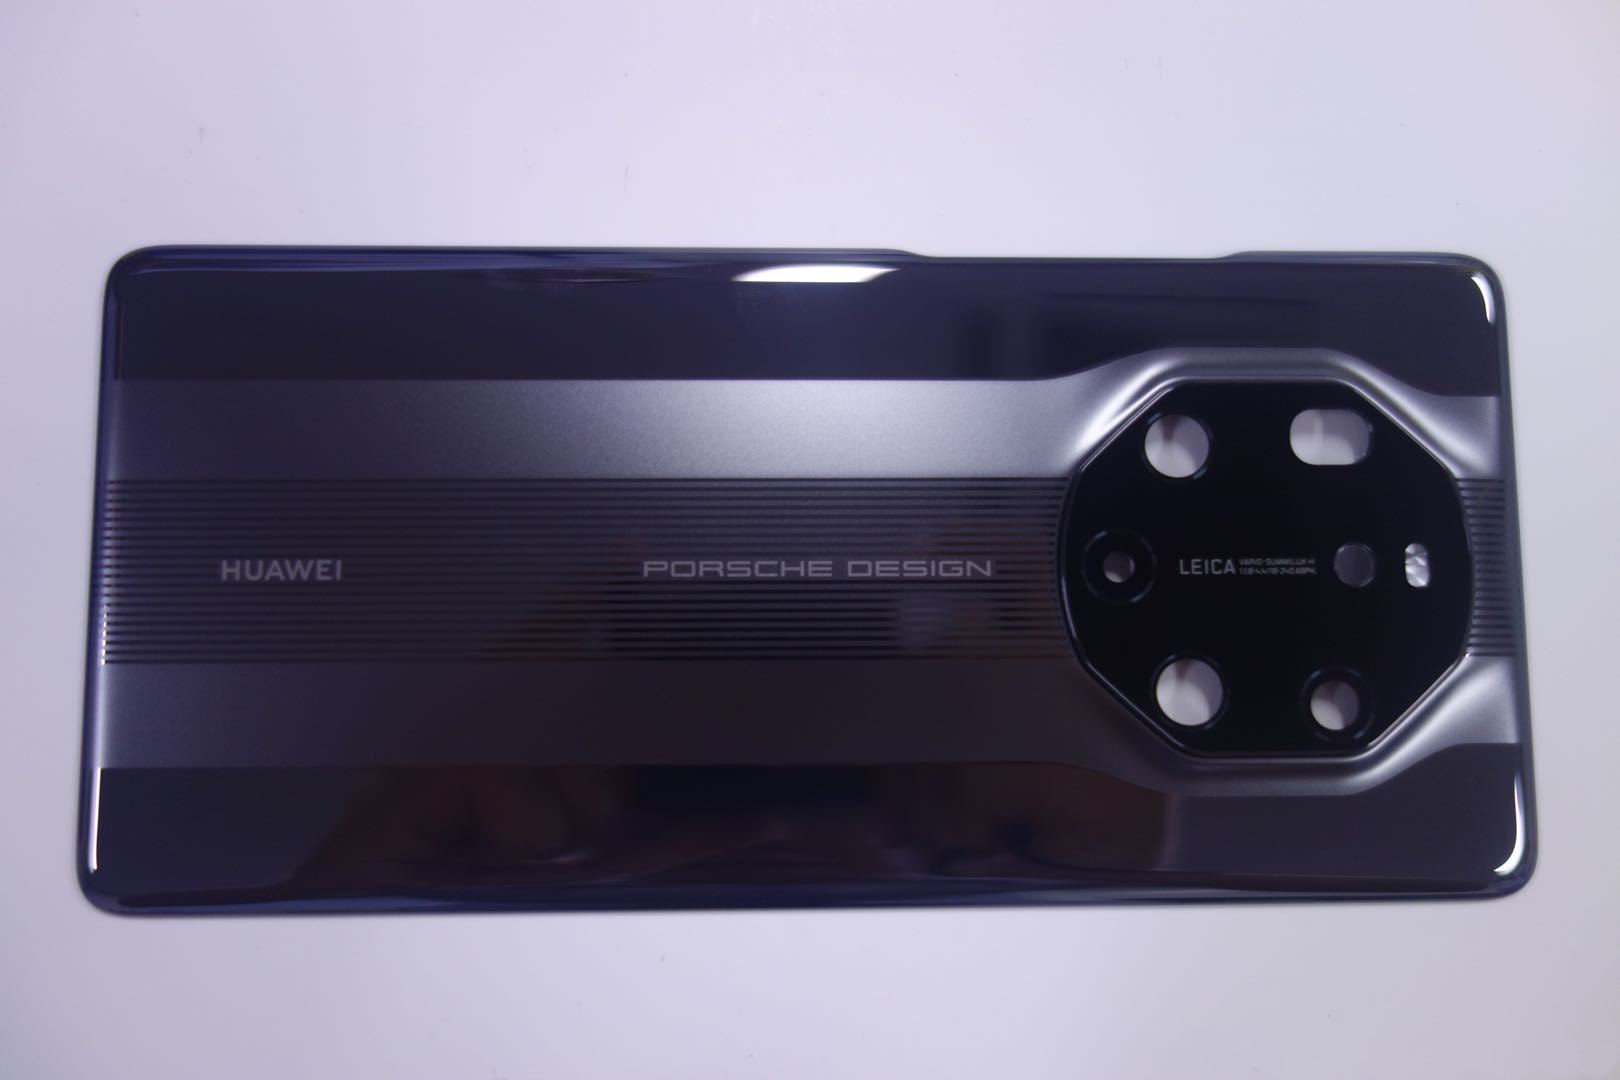 Huawei Mate 40 Pro lộ
ảnh render với cụm camera 4 camera hình tròn, chip Kirin
9000, sạc 65W